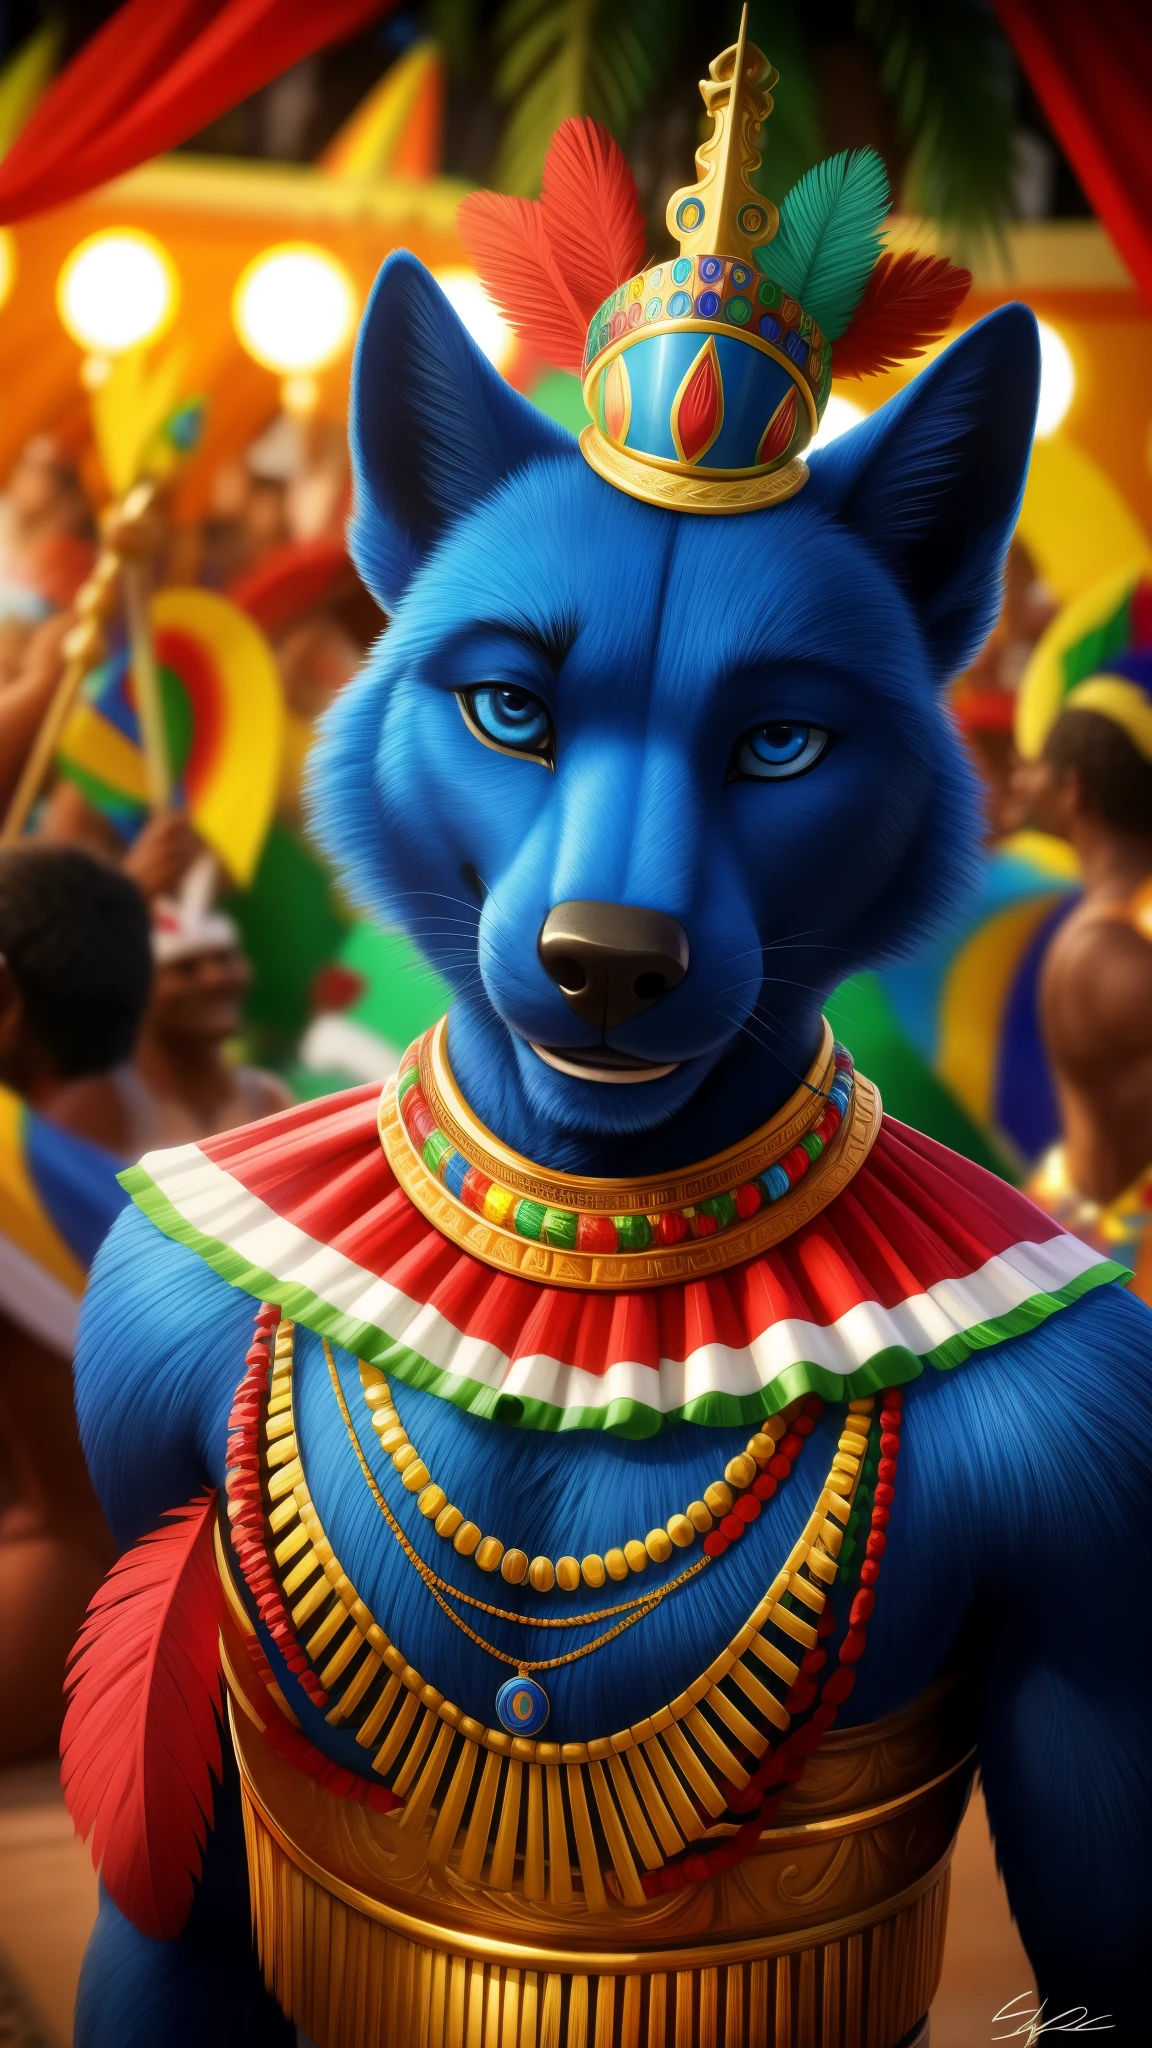 Dunkelblaues Fell, trägt ein Outfit im brasilianischen Stil, blaue Augen, ein realistischer Hintergrund von Rio de Janeiro, das Pagode spielt, brasilianischer Akzent, jetzt ein Karneval im Hintergrund für den Betrachter, das sehr coole Lächeln, einzigartiges und originelles visuelles HDR 99K